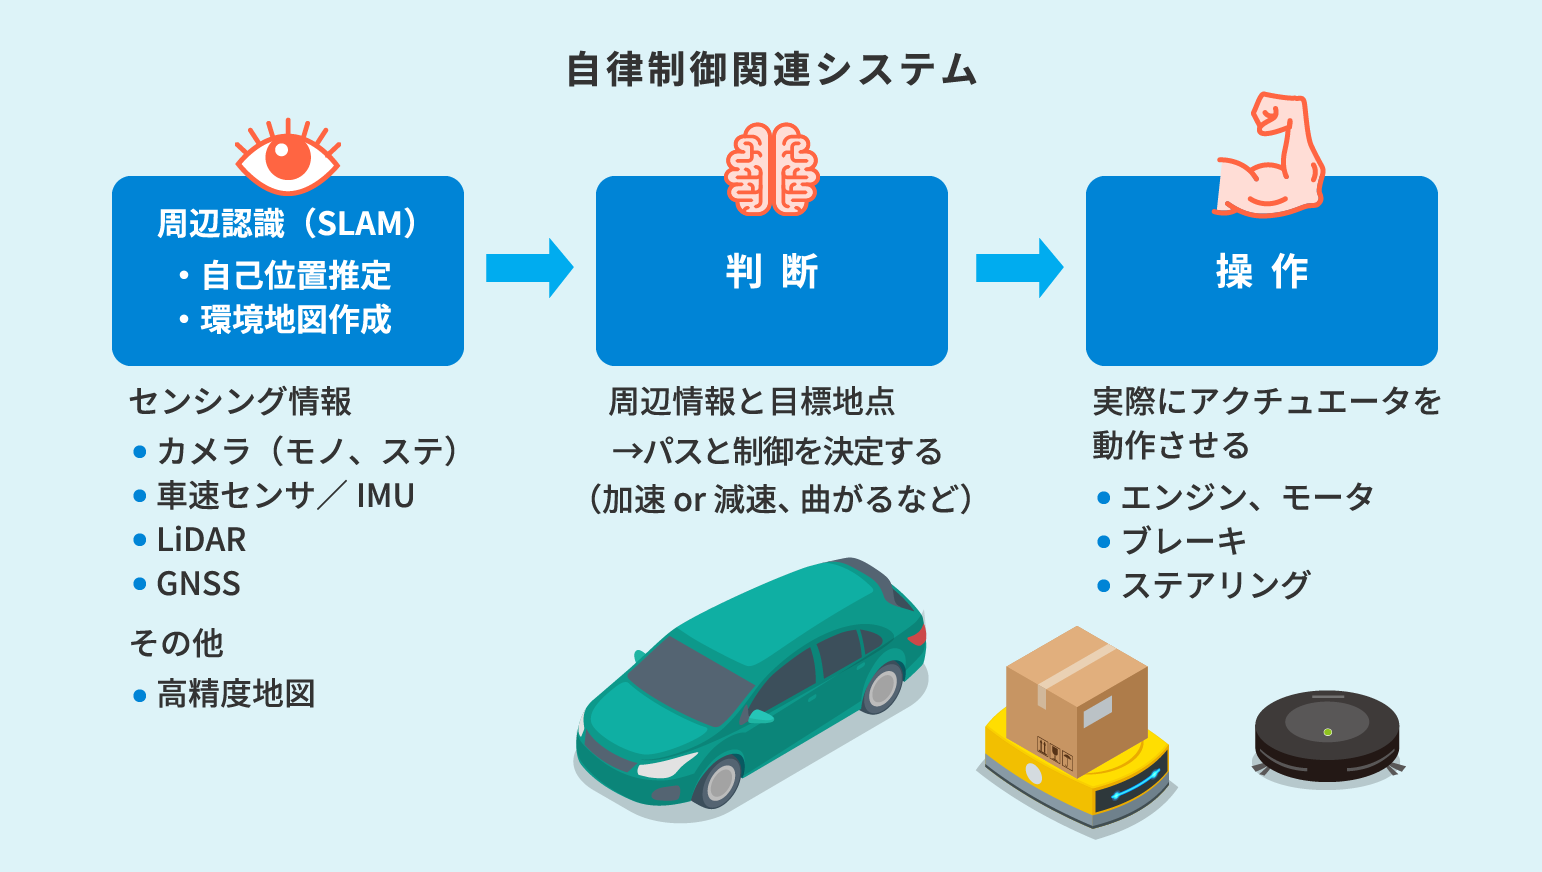 SLAMは、自動運転/自律制御システムの「認識」を行うブロックにおいて、周辺認識を行うための1つの技術として利用されています。